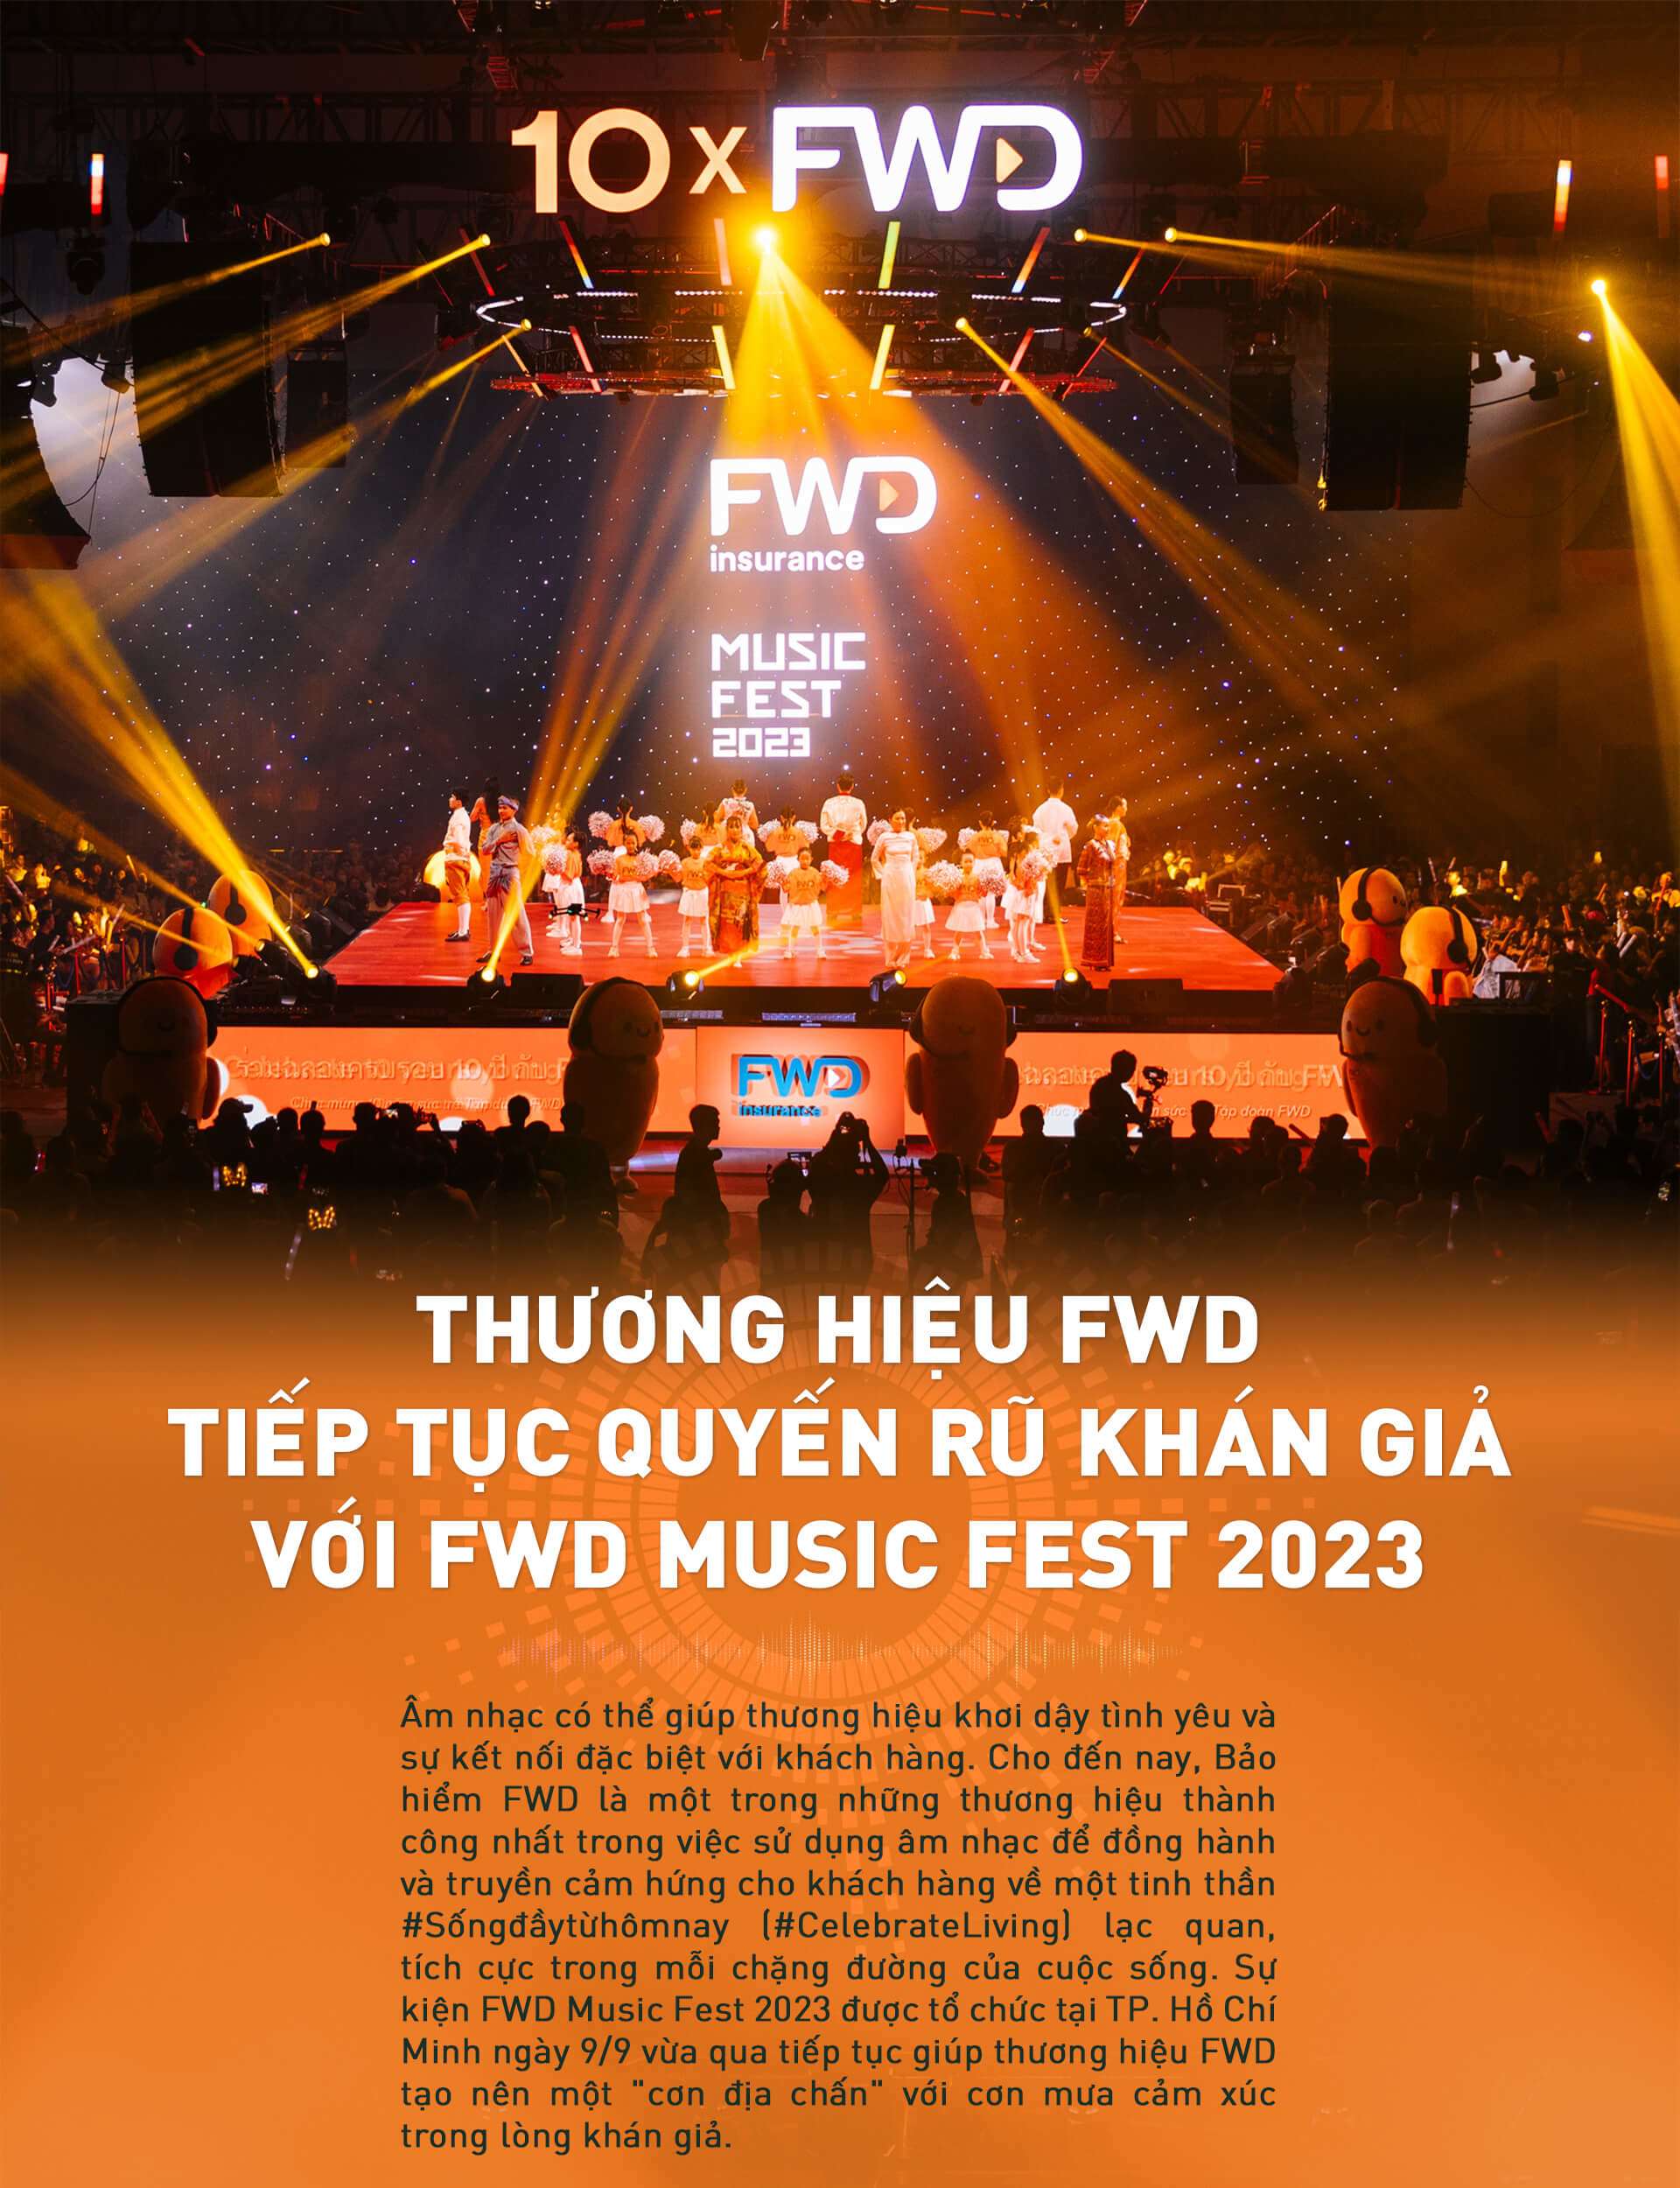 Thương hiệu FWD tiếp tục quyến rũ khán giả với FWD Music Fest 2023 - 1